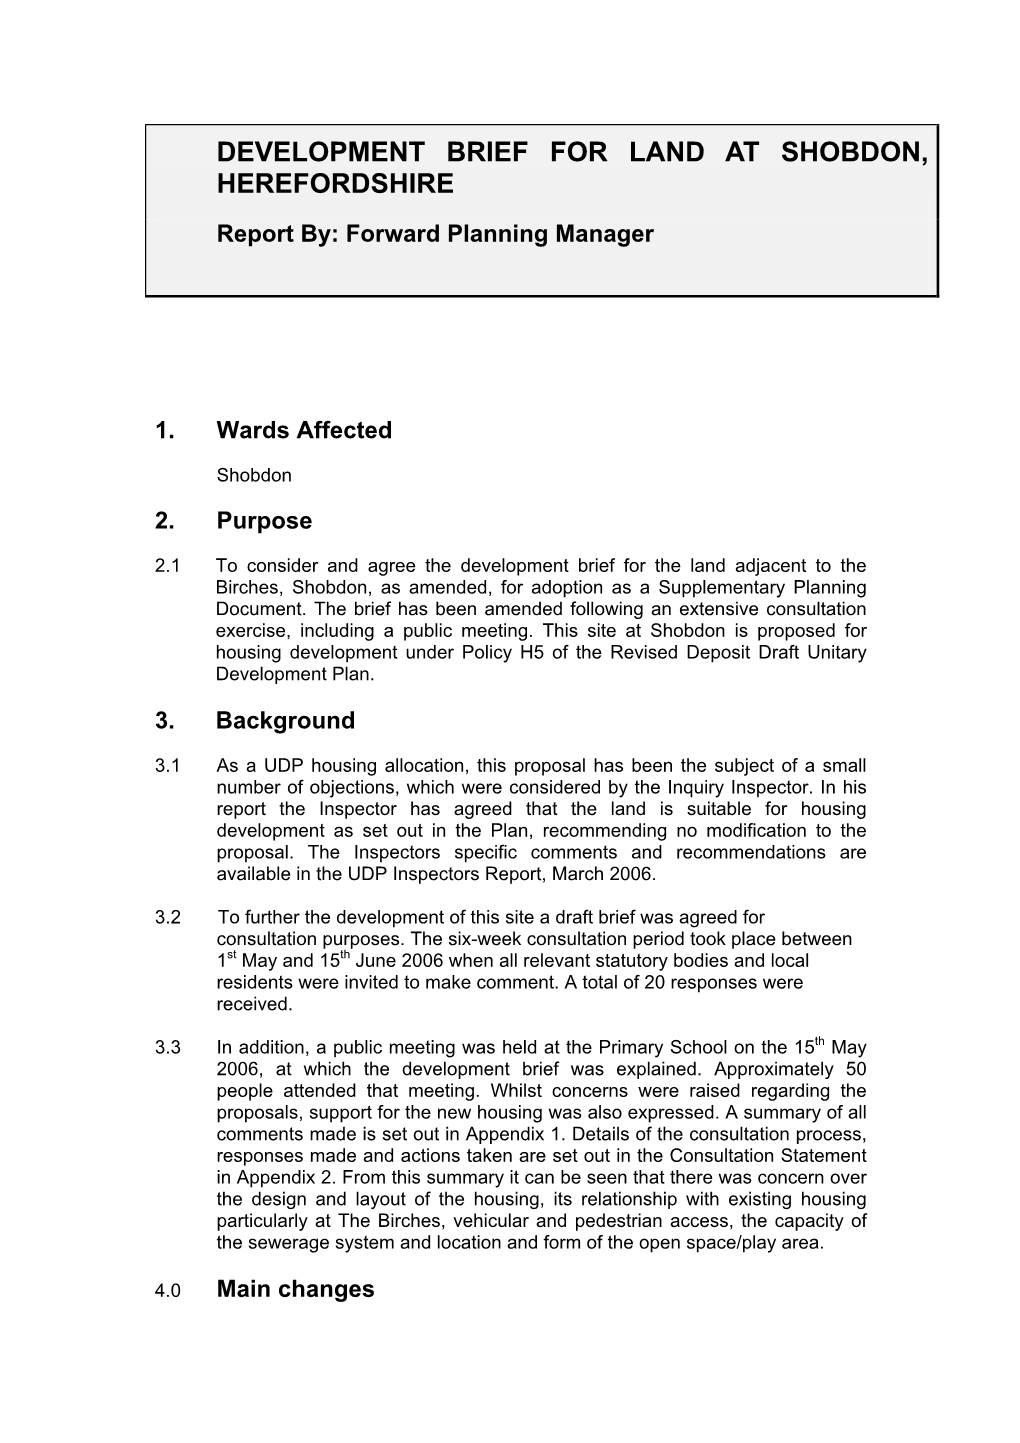 Development Brief for Land at Shobdon, Herefordshire